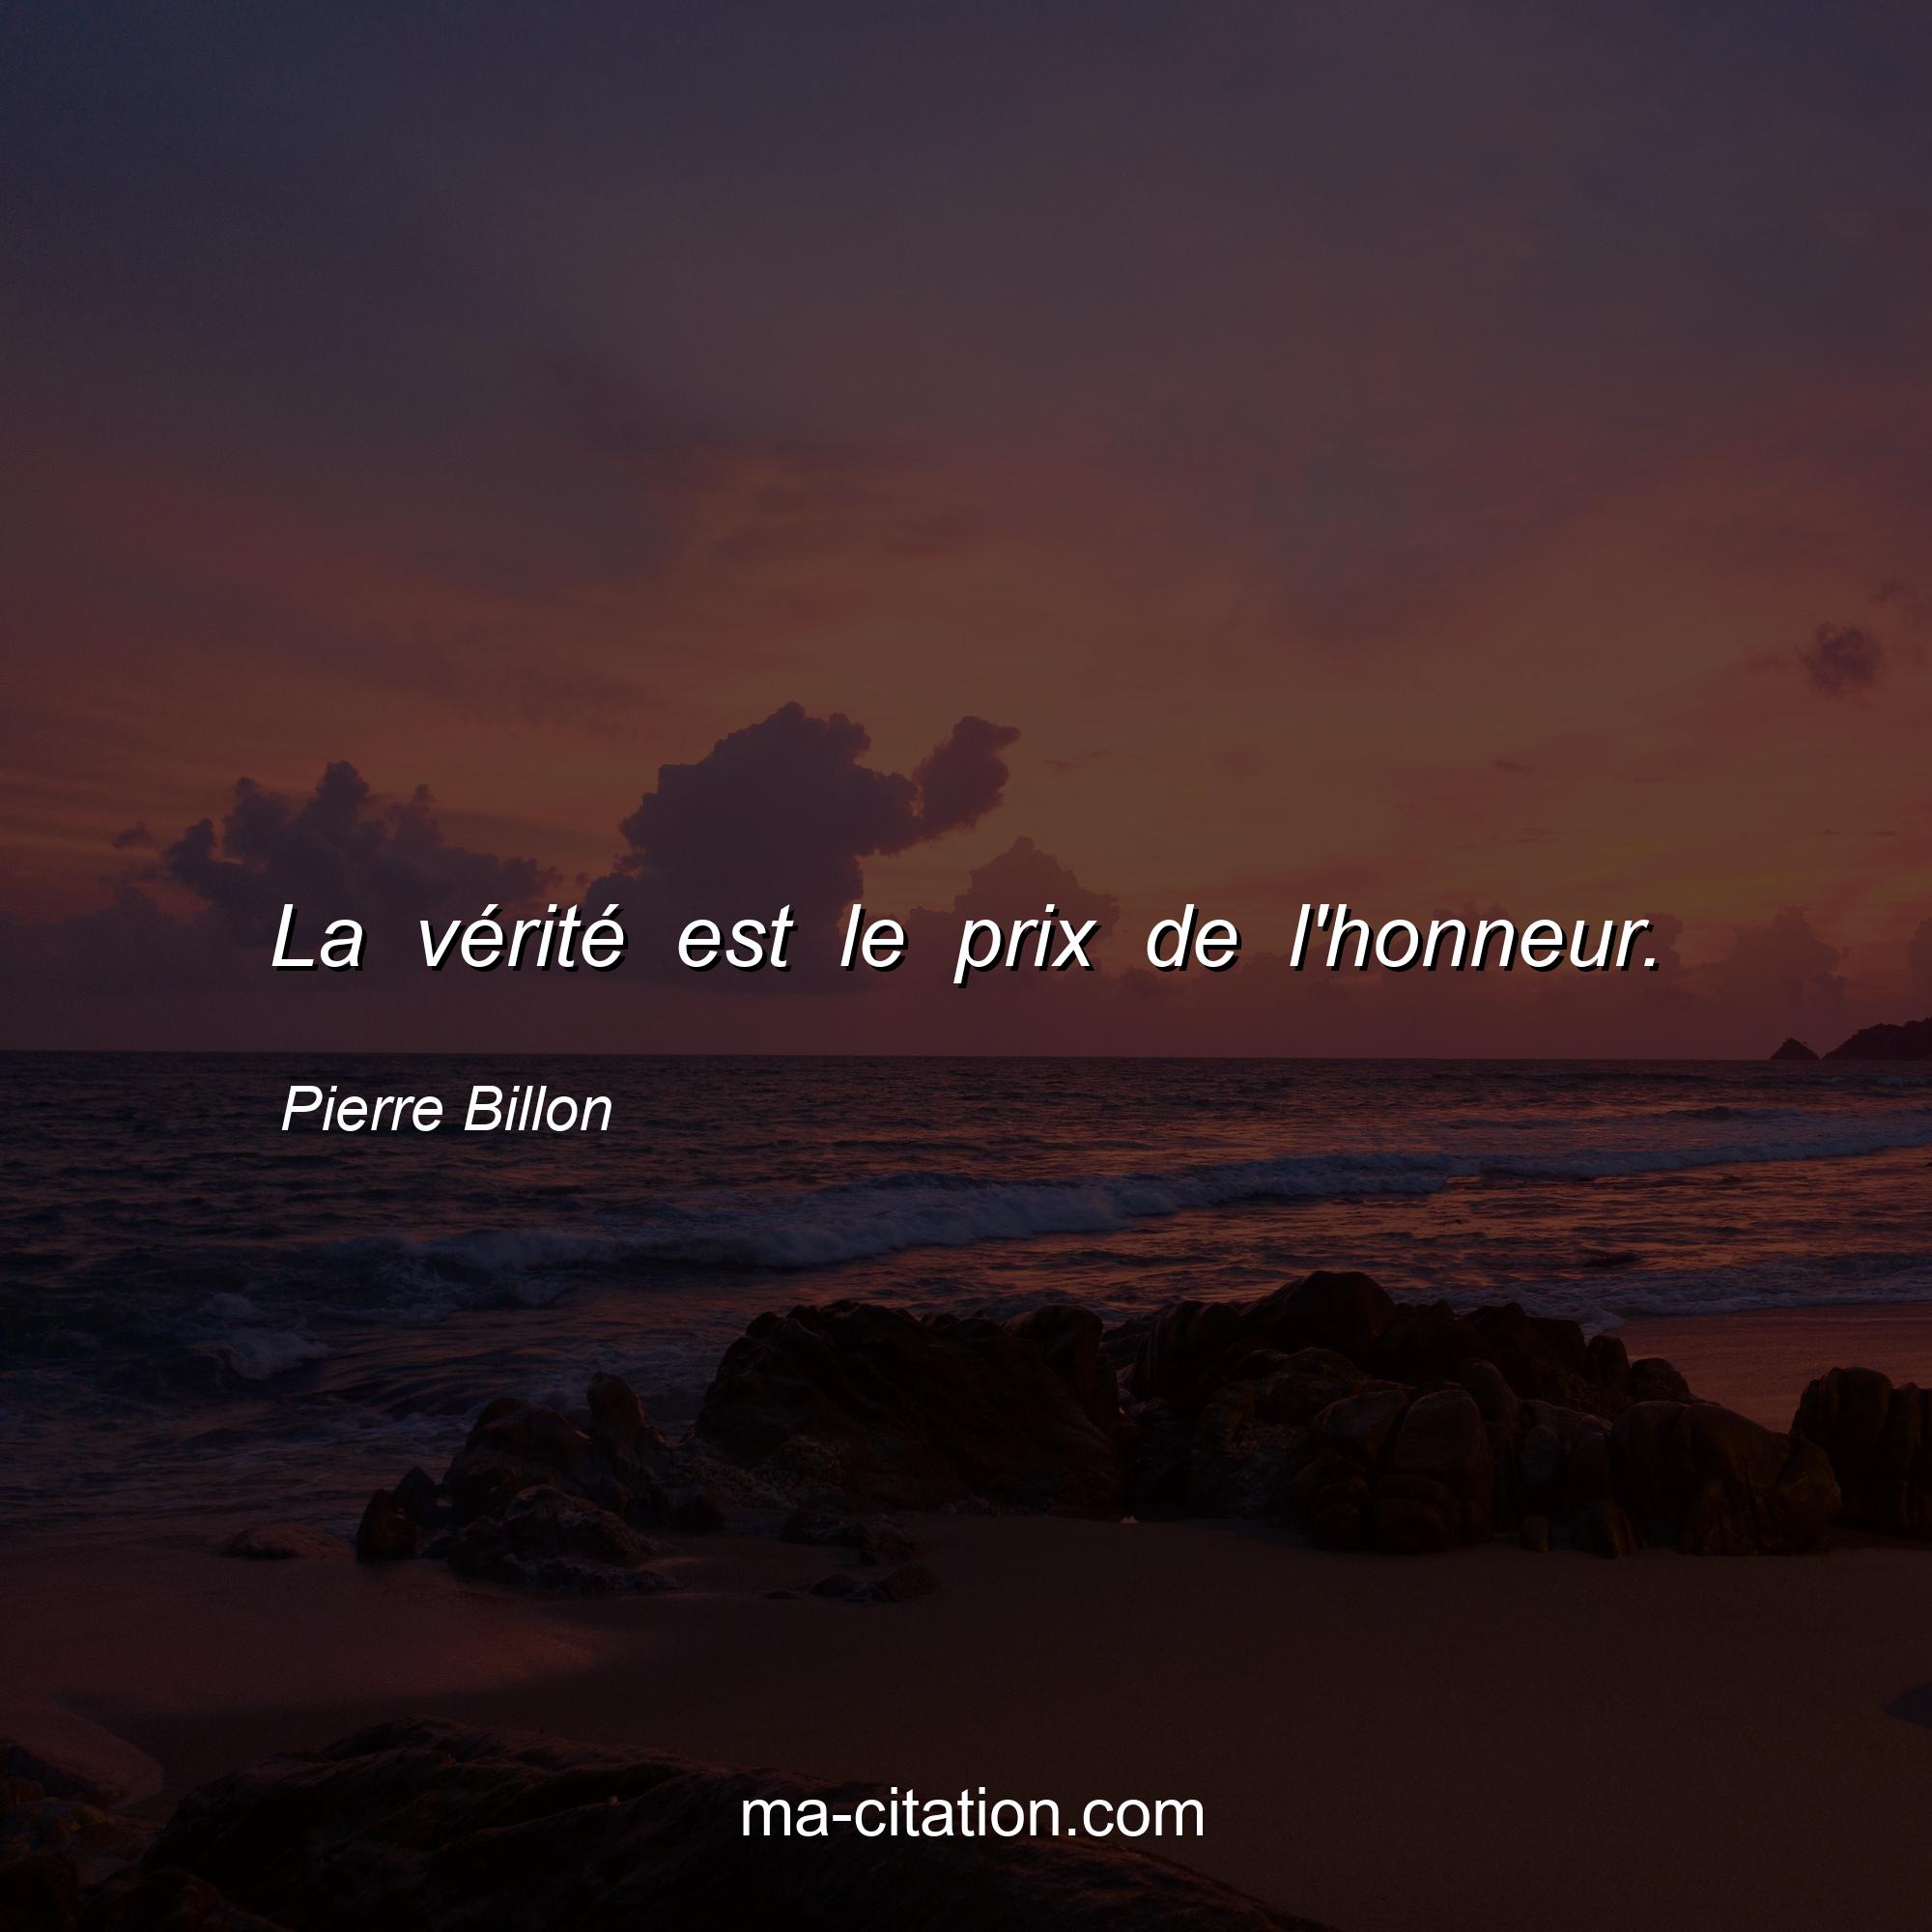 Pierre Billon : La vérité est le prix de l'honneur.